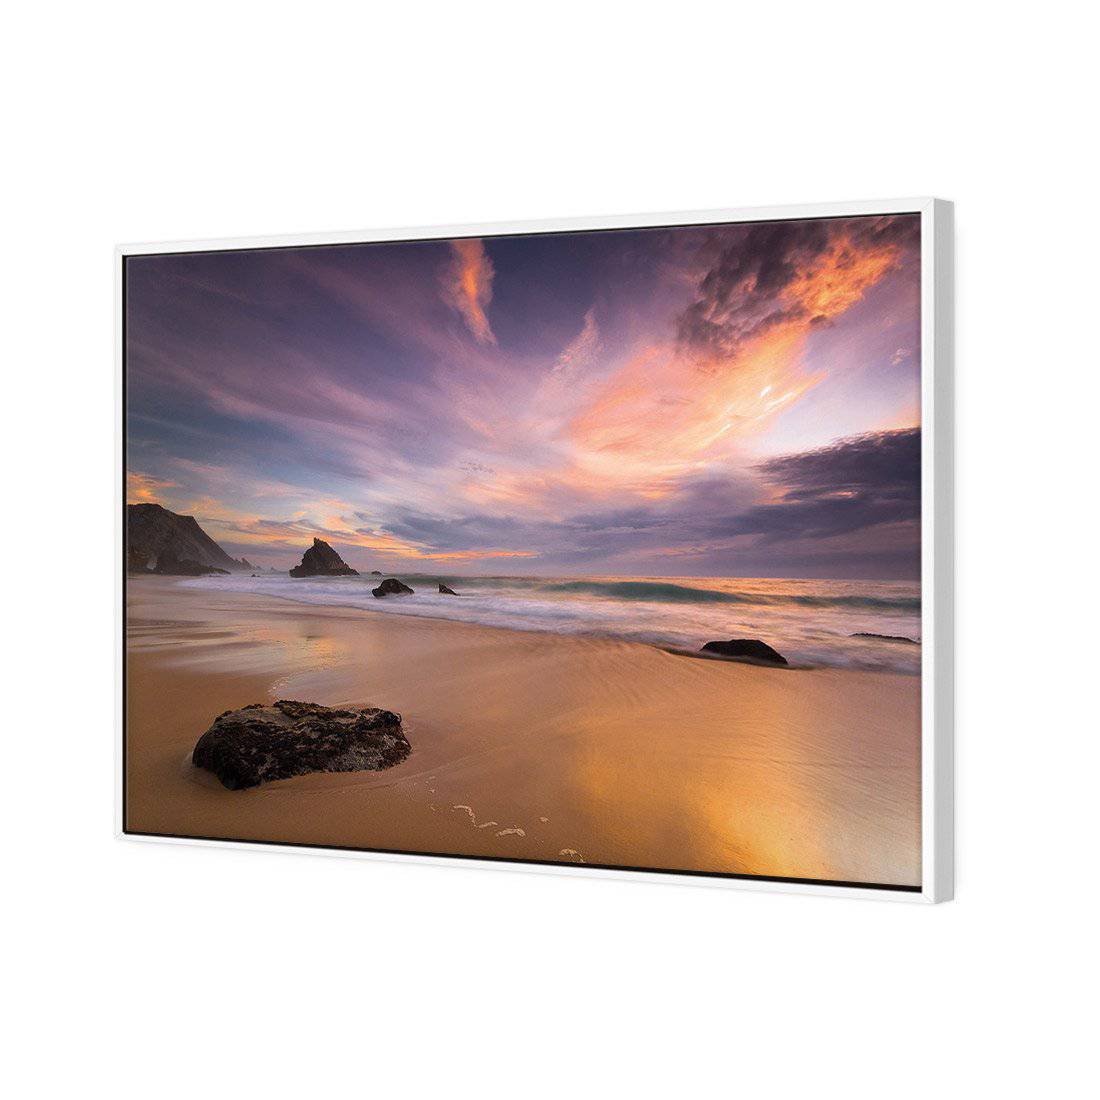 Beach Sunset Canvas Art-Canvas-Wall Art Designs-45x30cm-Rolled Canvas-Wall Art Designs